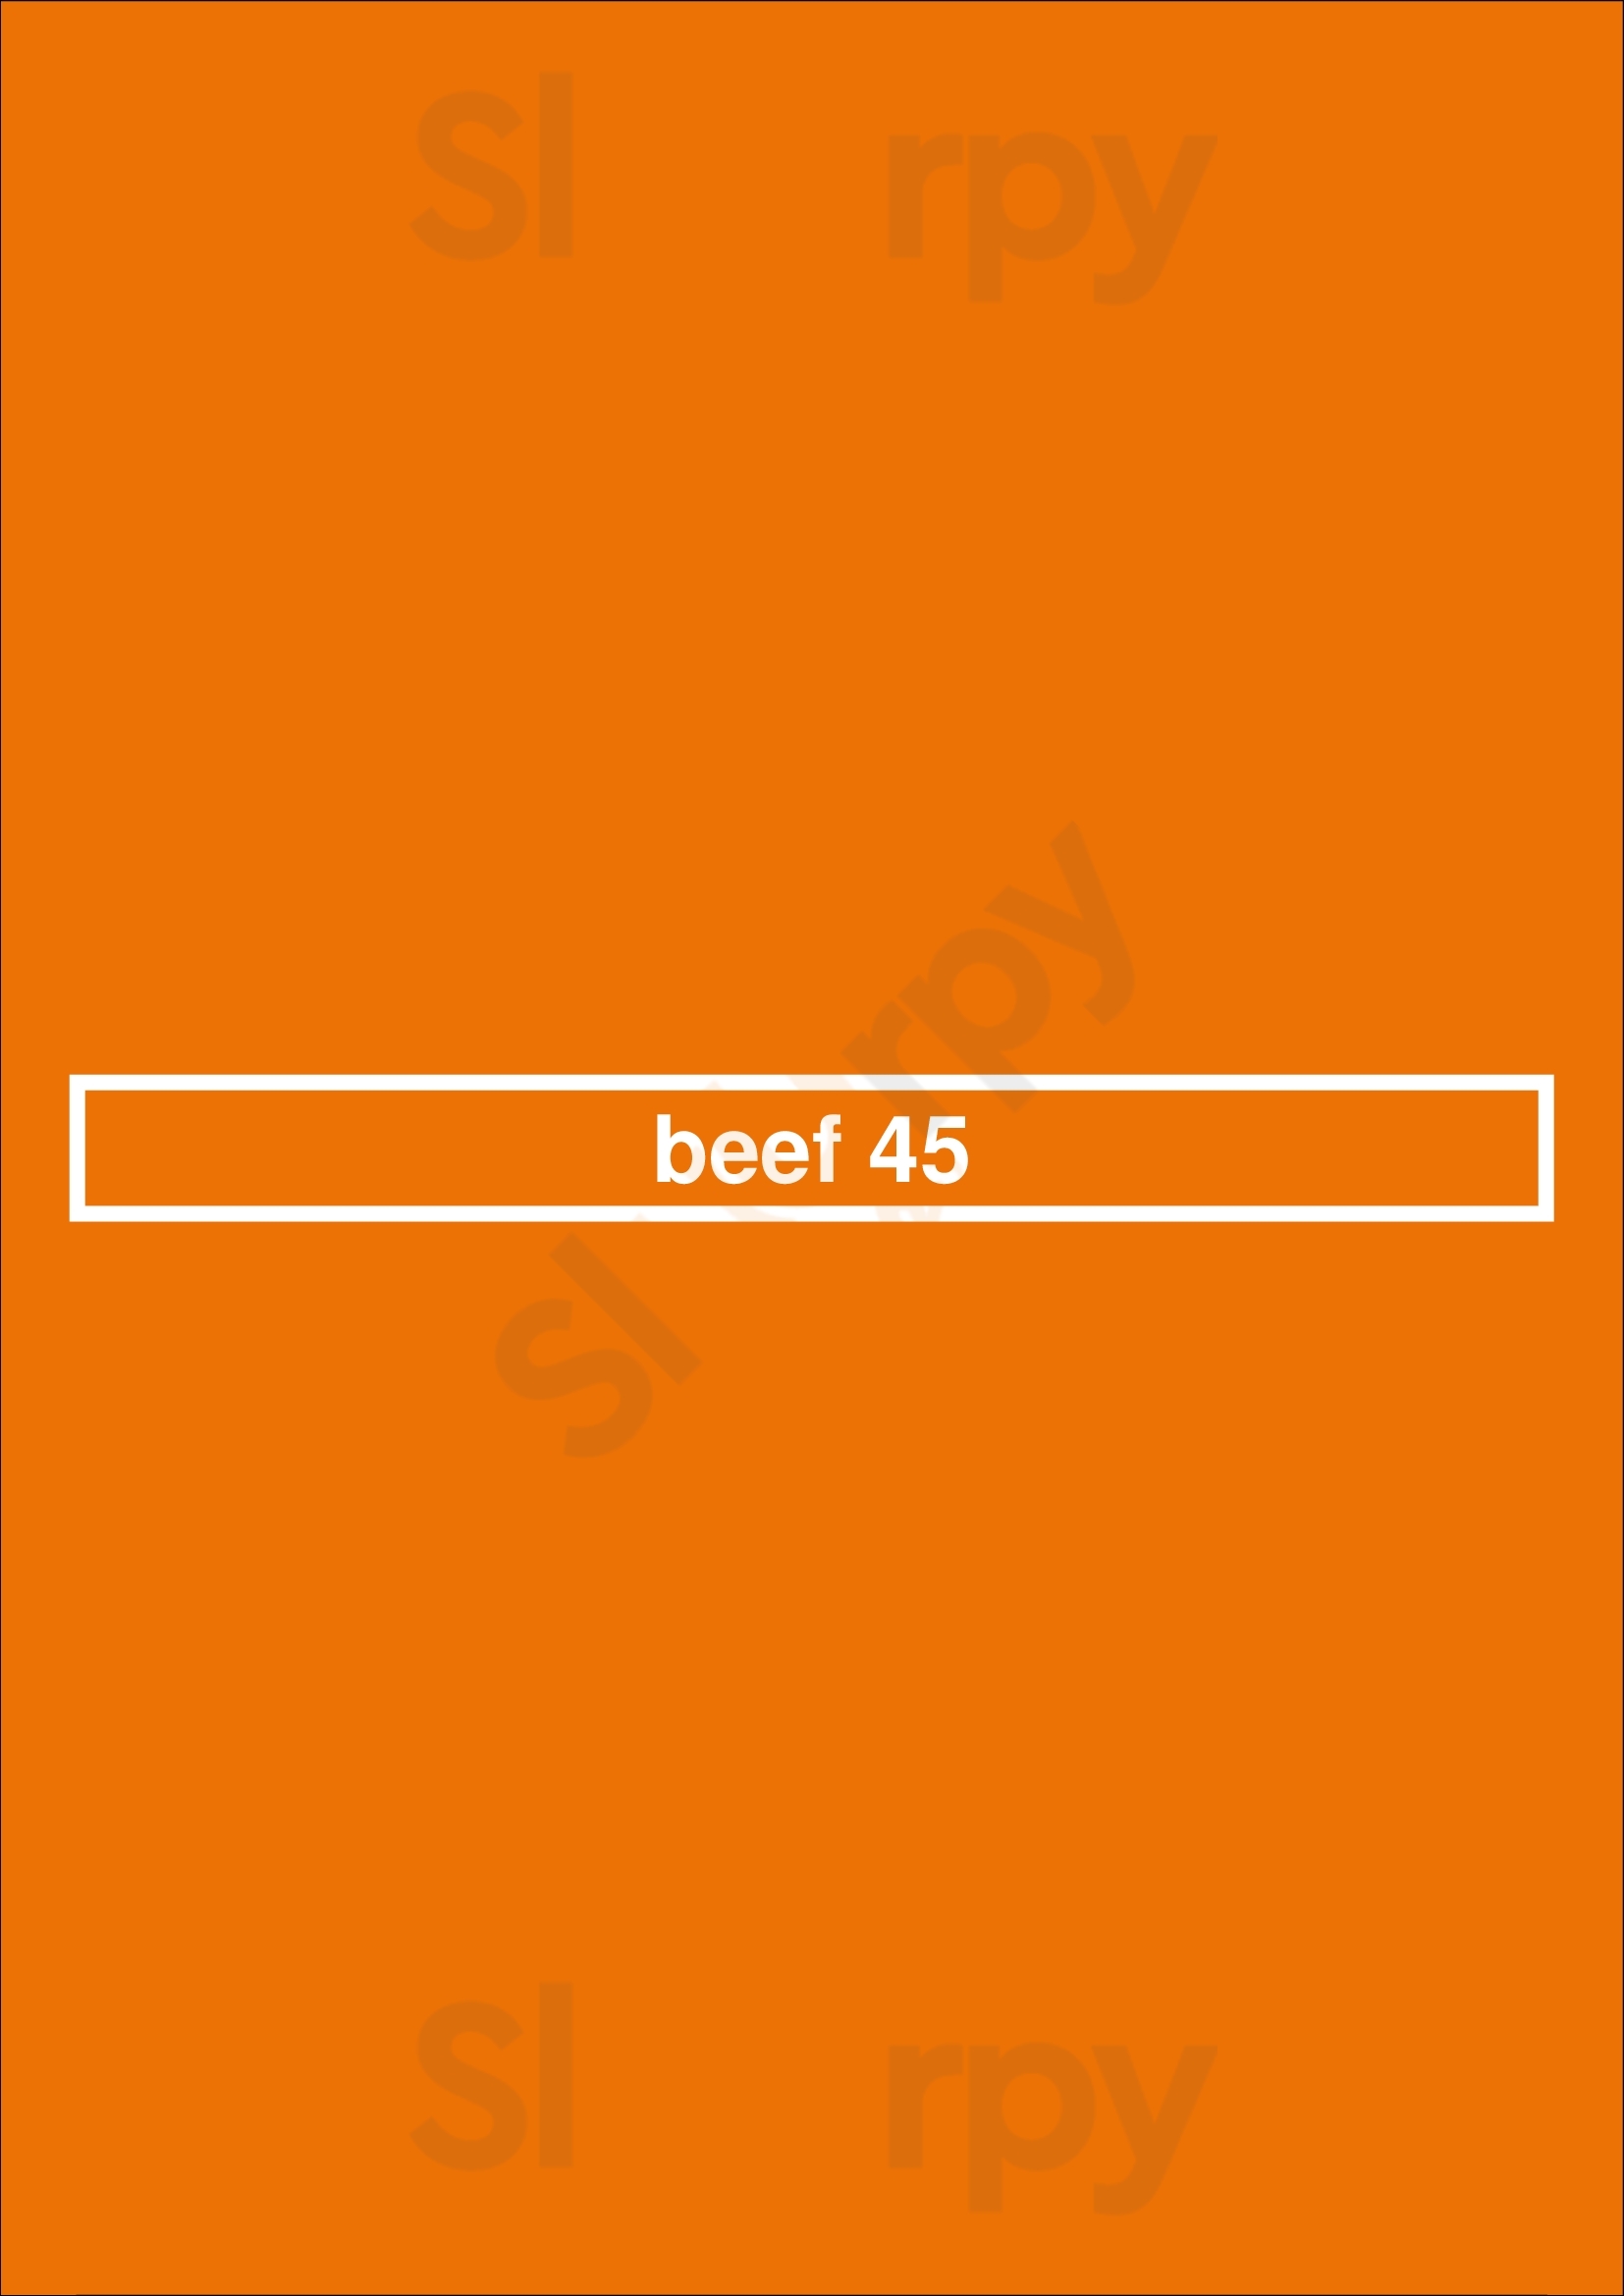 Beef 45 Berlin Menu - 1